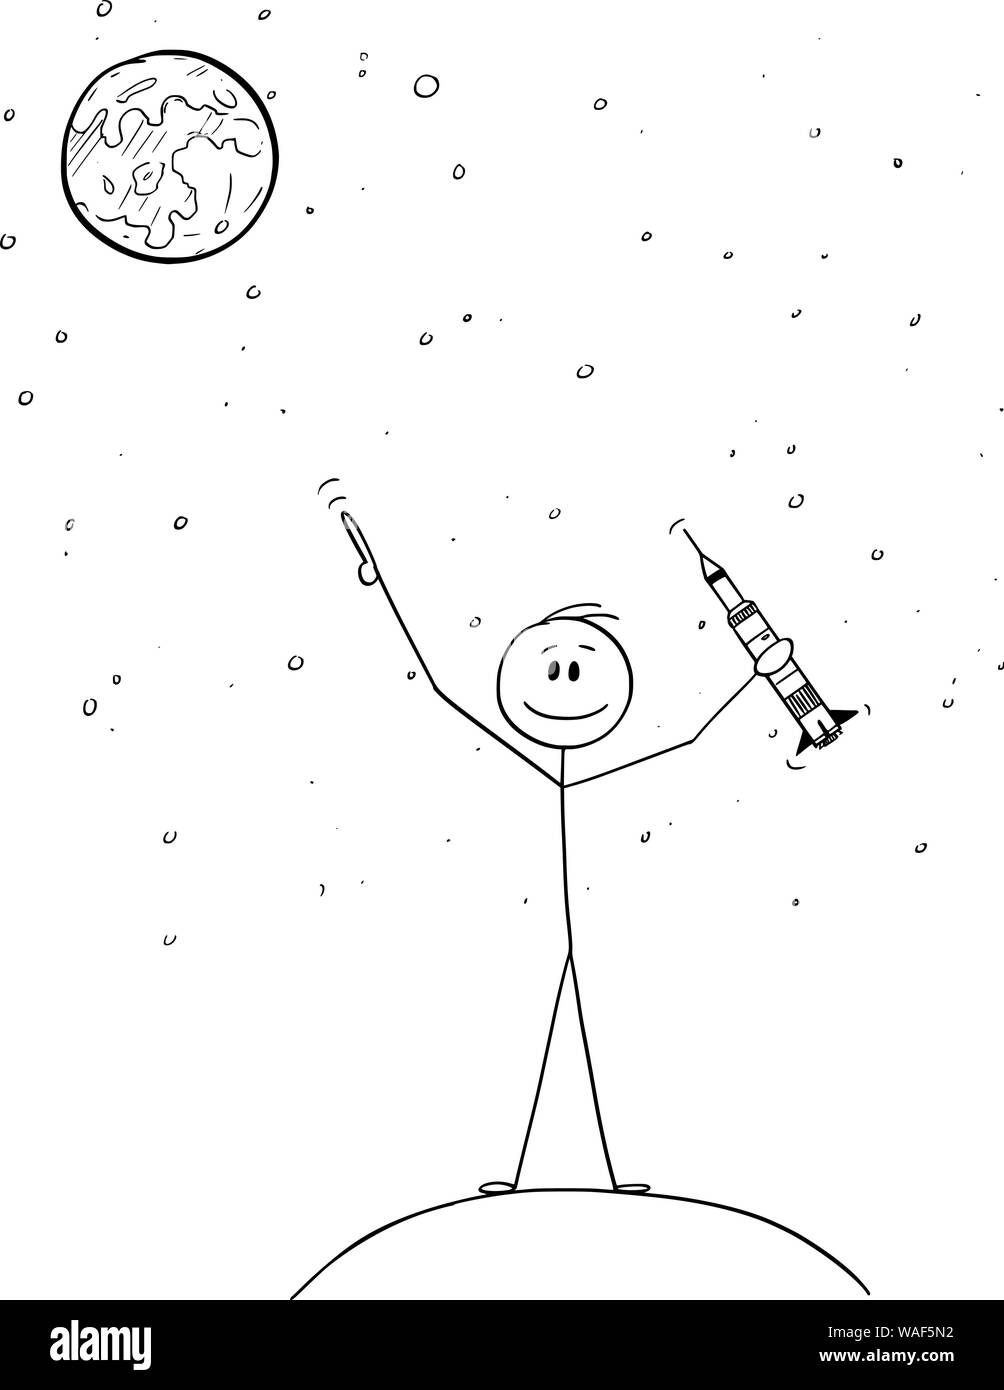 Vector cartoon stick figura disegno illustrazione concettuale dell'uomo azienda modello a razzo e puntando alla luna o su Marte. Esplorazione dello spazio concetto. Illustrazione Vettoriale